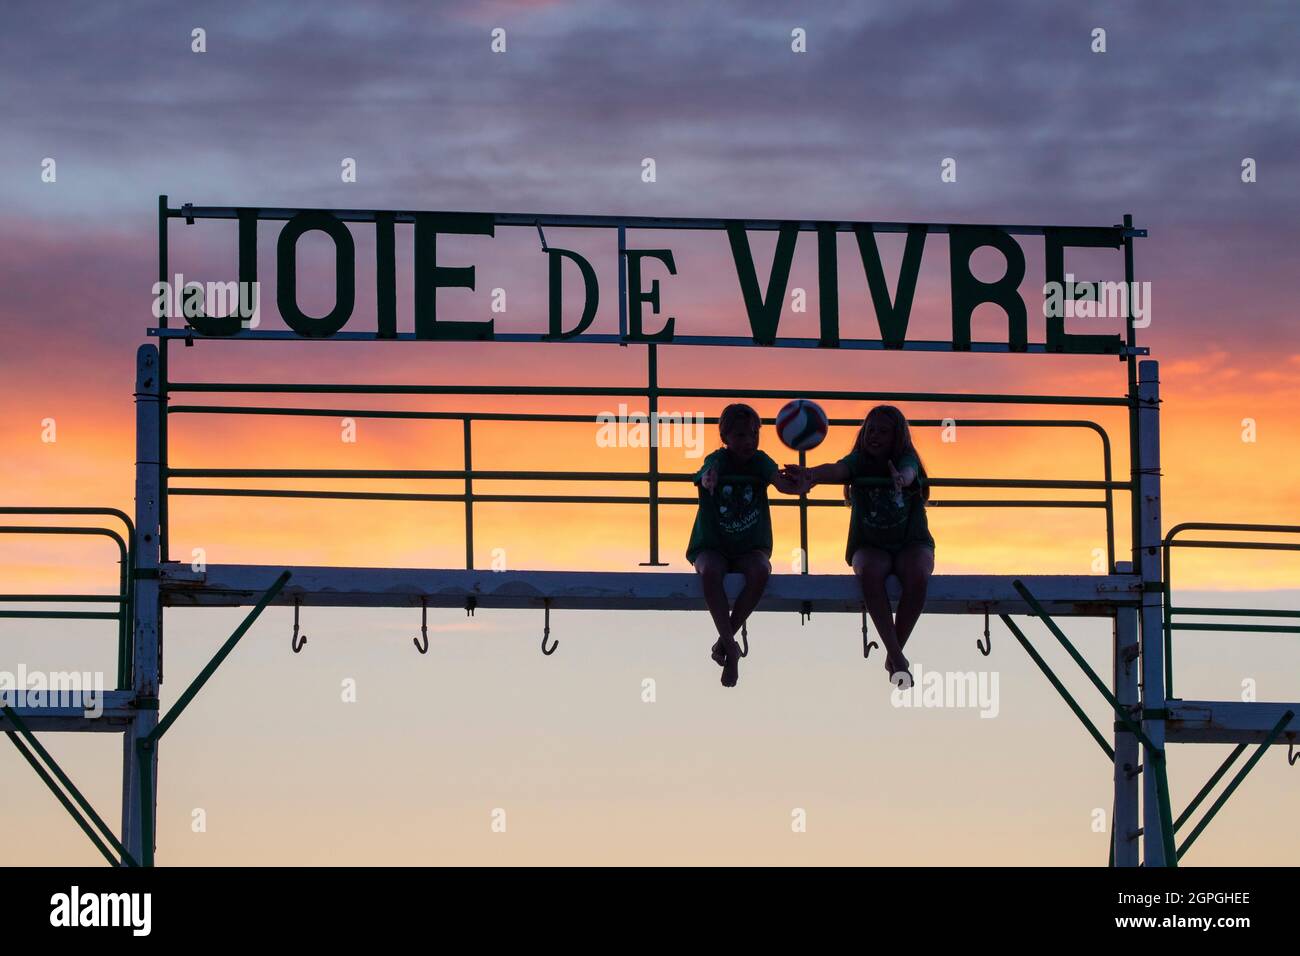 France, Pas de Calais, Cote d'Opale, Le Touquet, 2 children on the swing of the joie de vivre beach club at sunset Stock Photo